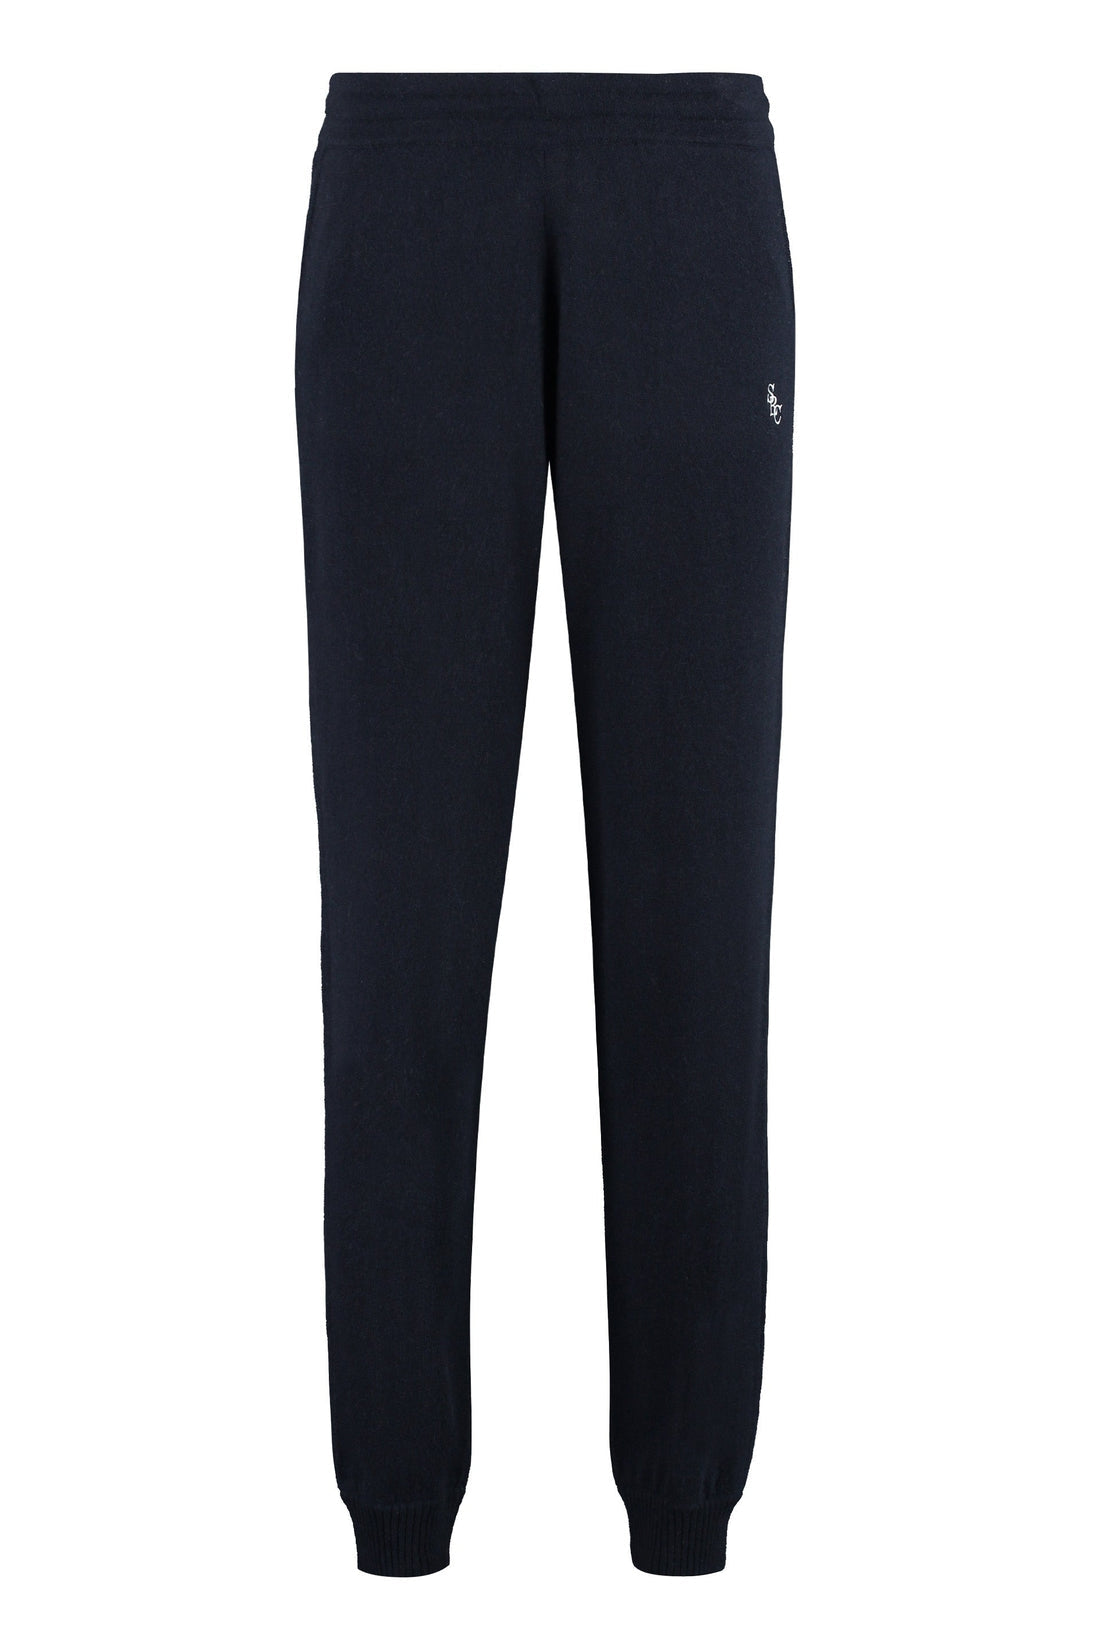 Sporty & Rich-OUTLET-SALE-Cashmere trousers-ARCHIVIST